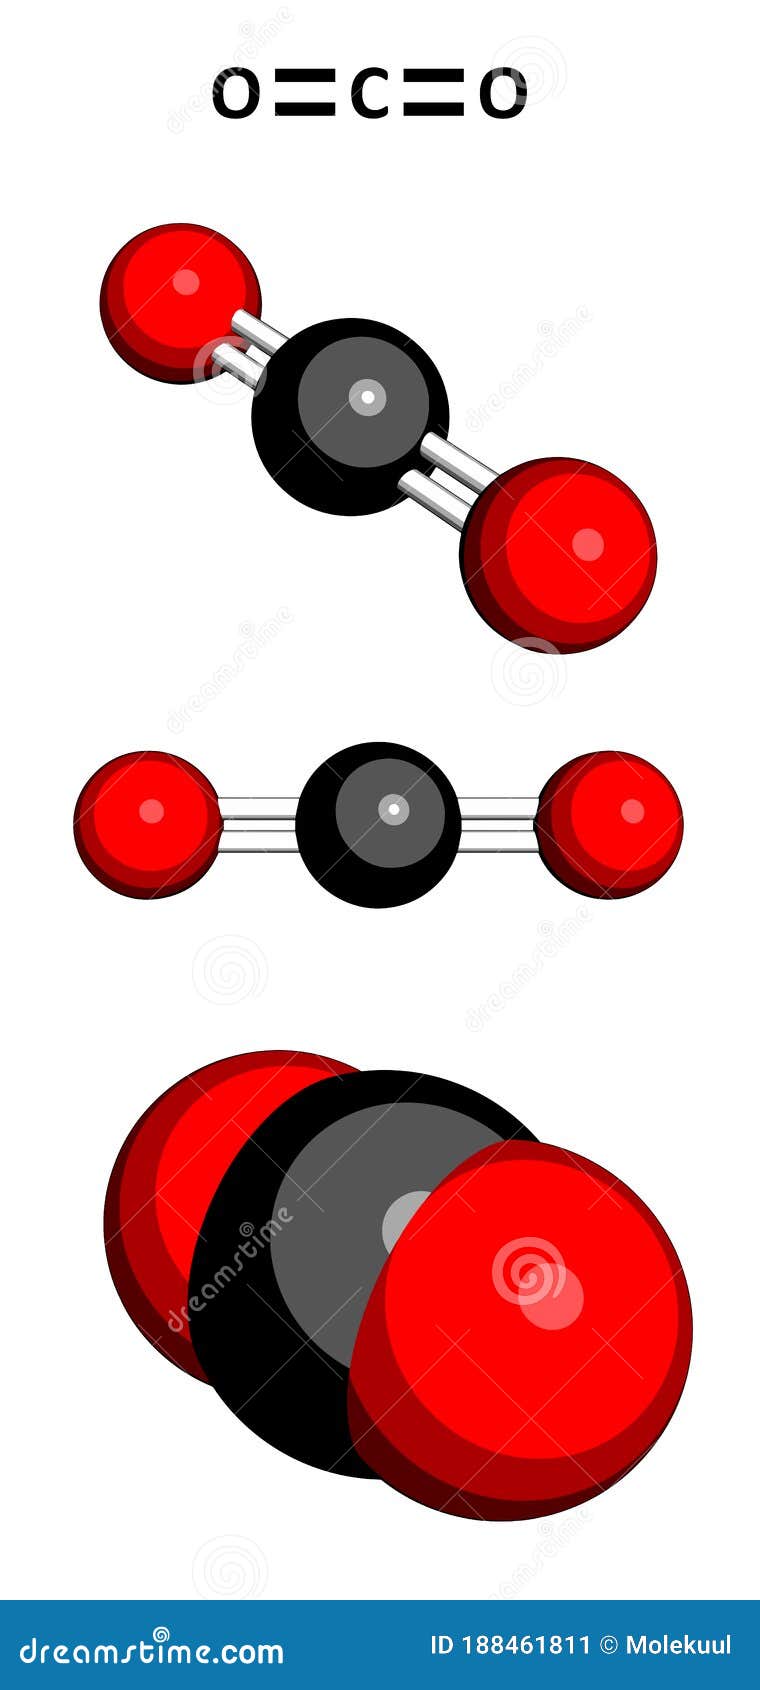 Modelo Molecular De Dióxido De Carbono Co2 Stock de ilustración -  Ilustración de invernadero, tierra: 188461811